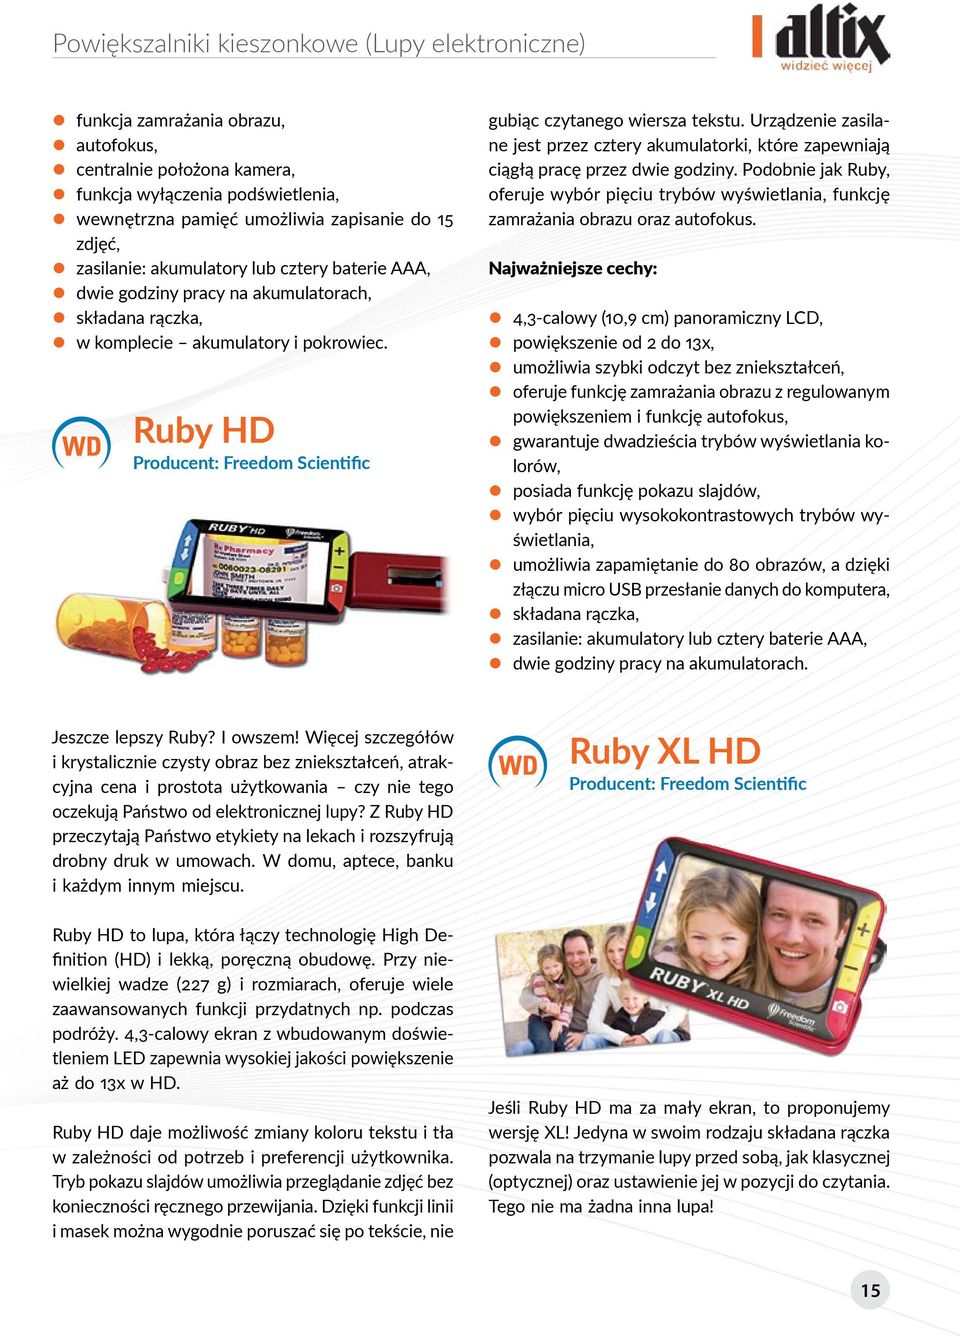 Ruby HD Producent: Freedom Scientific gubiąc czytanego wiersza tekstu. Urządzenie zasilane jest przez cztery akumulatorki, które zapewniają ciągłą pracę przez dwie godziny.